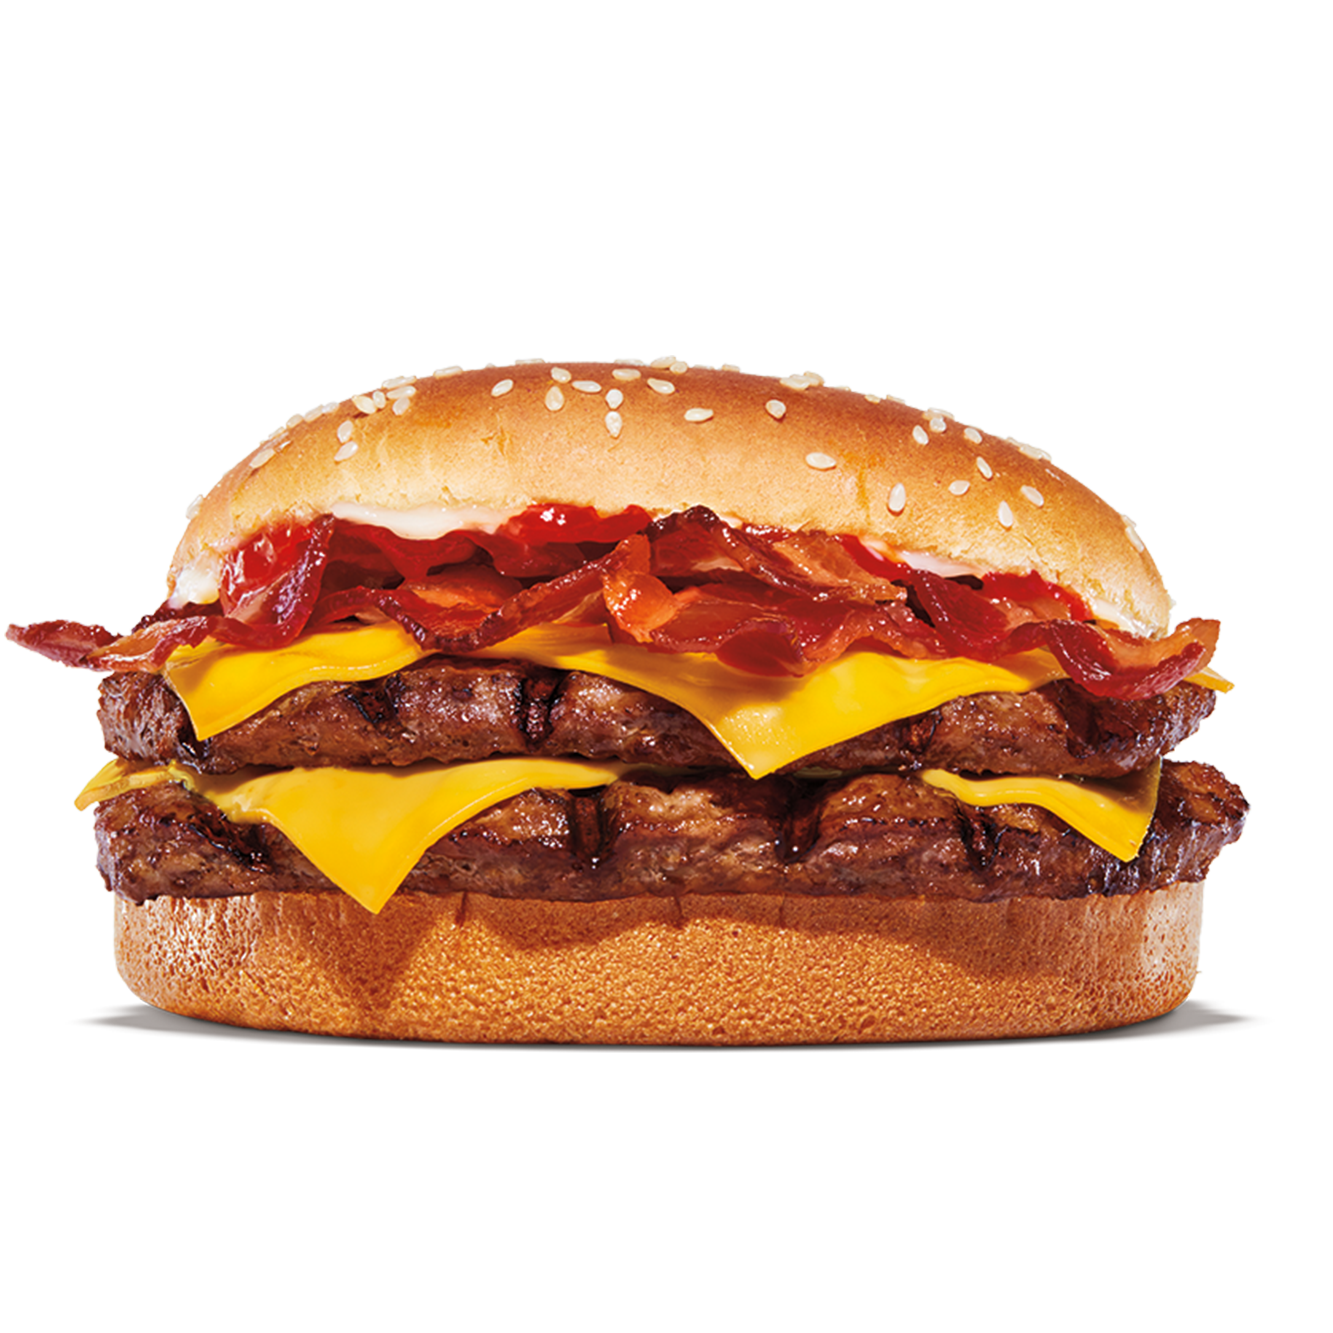 Burger King Middletown (302)376-1979